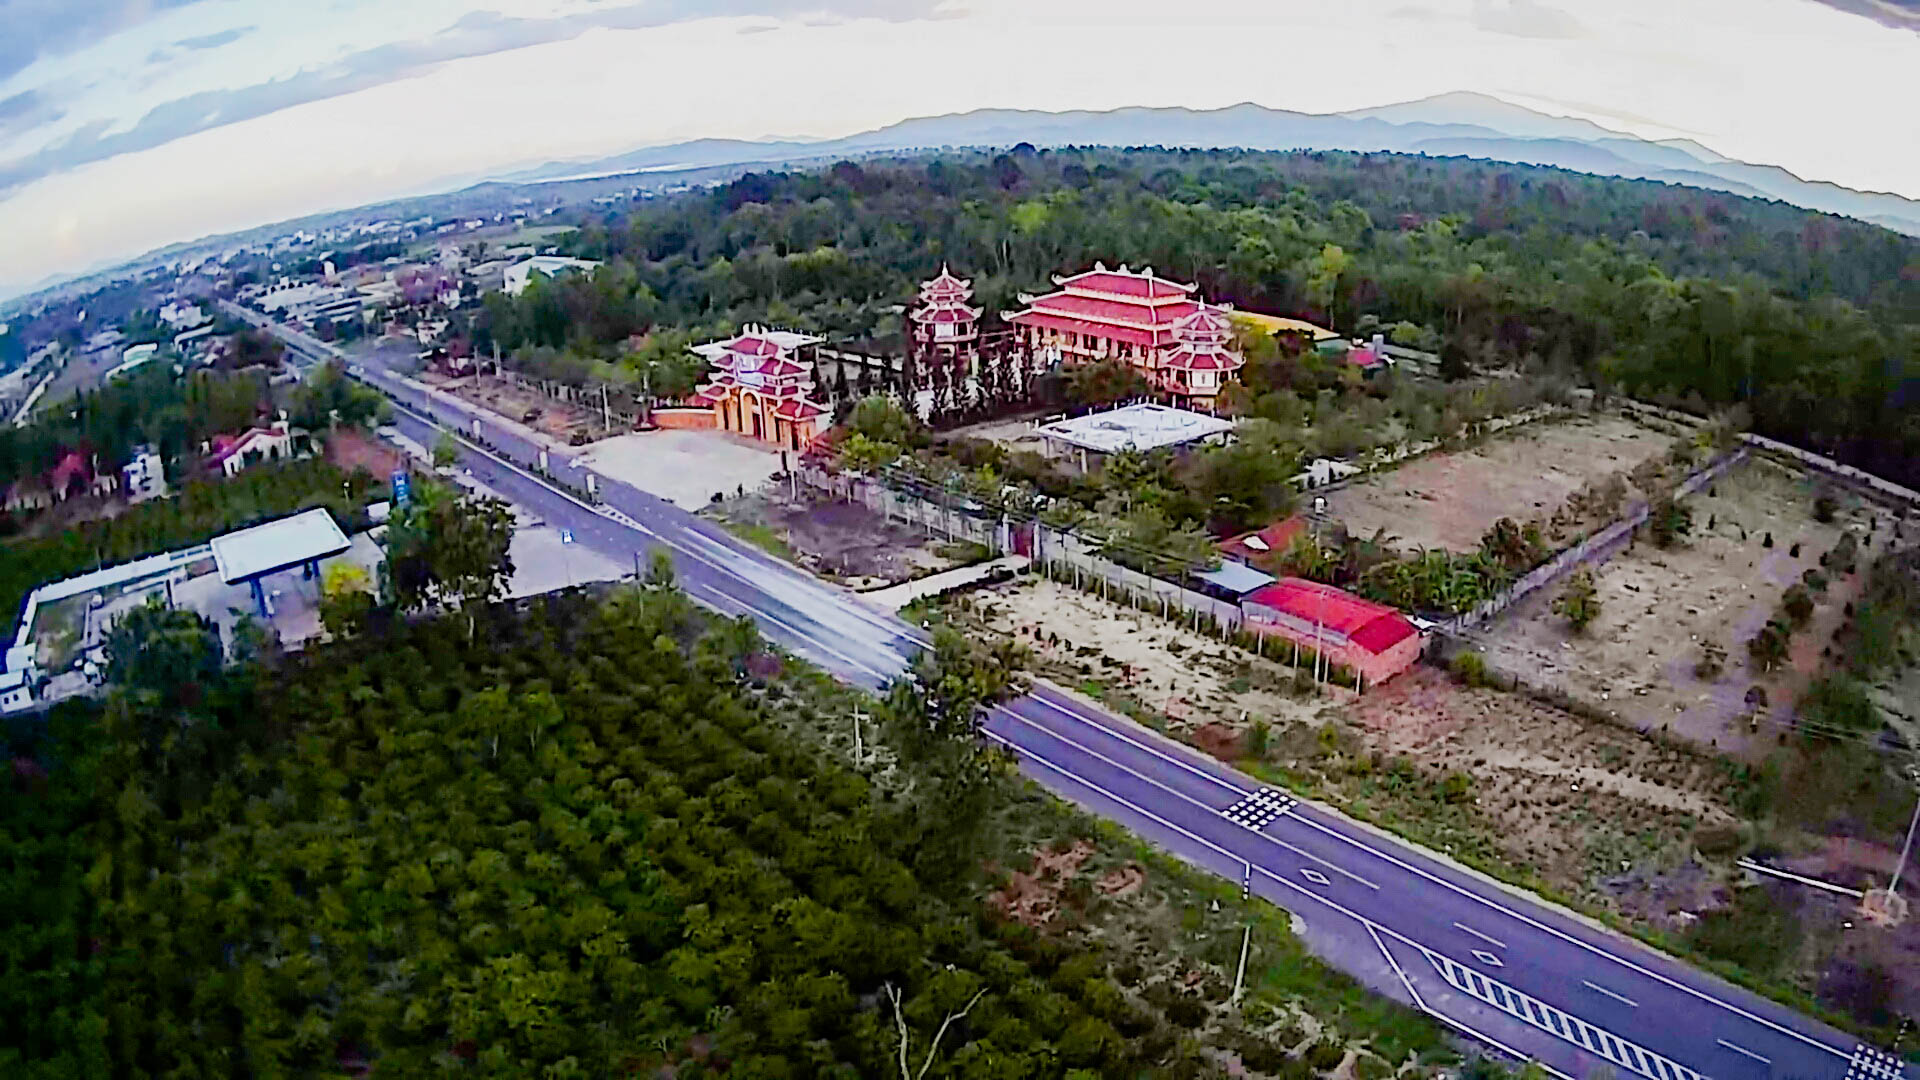 Hình ảnh chùa Tháp Kỳ Quang nhìn trên cao - Chùa ở Việt Nam